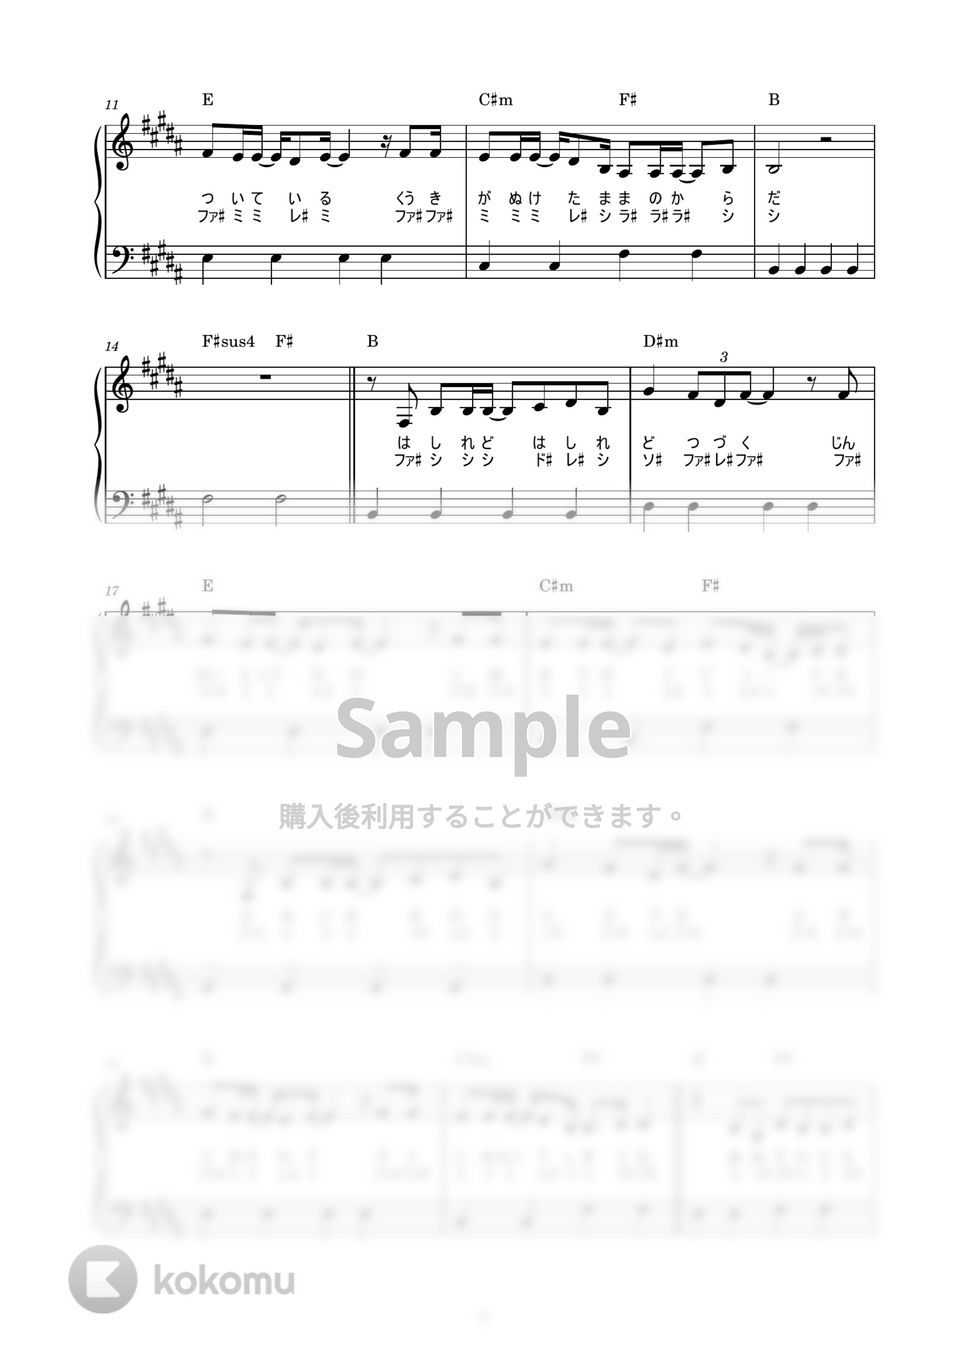 あいみょん - 愛を知るまでは (かんたん / 歌詞付き / ドレミ付き / 初心者) by piano.tokyo